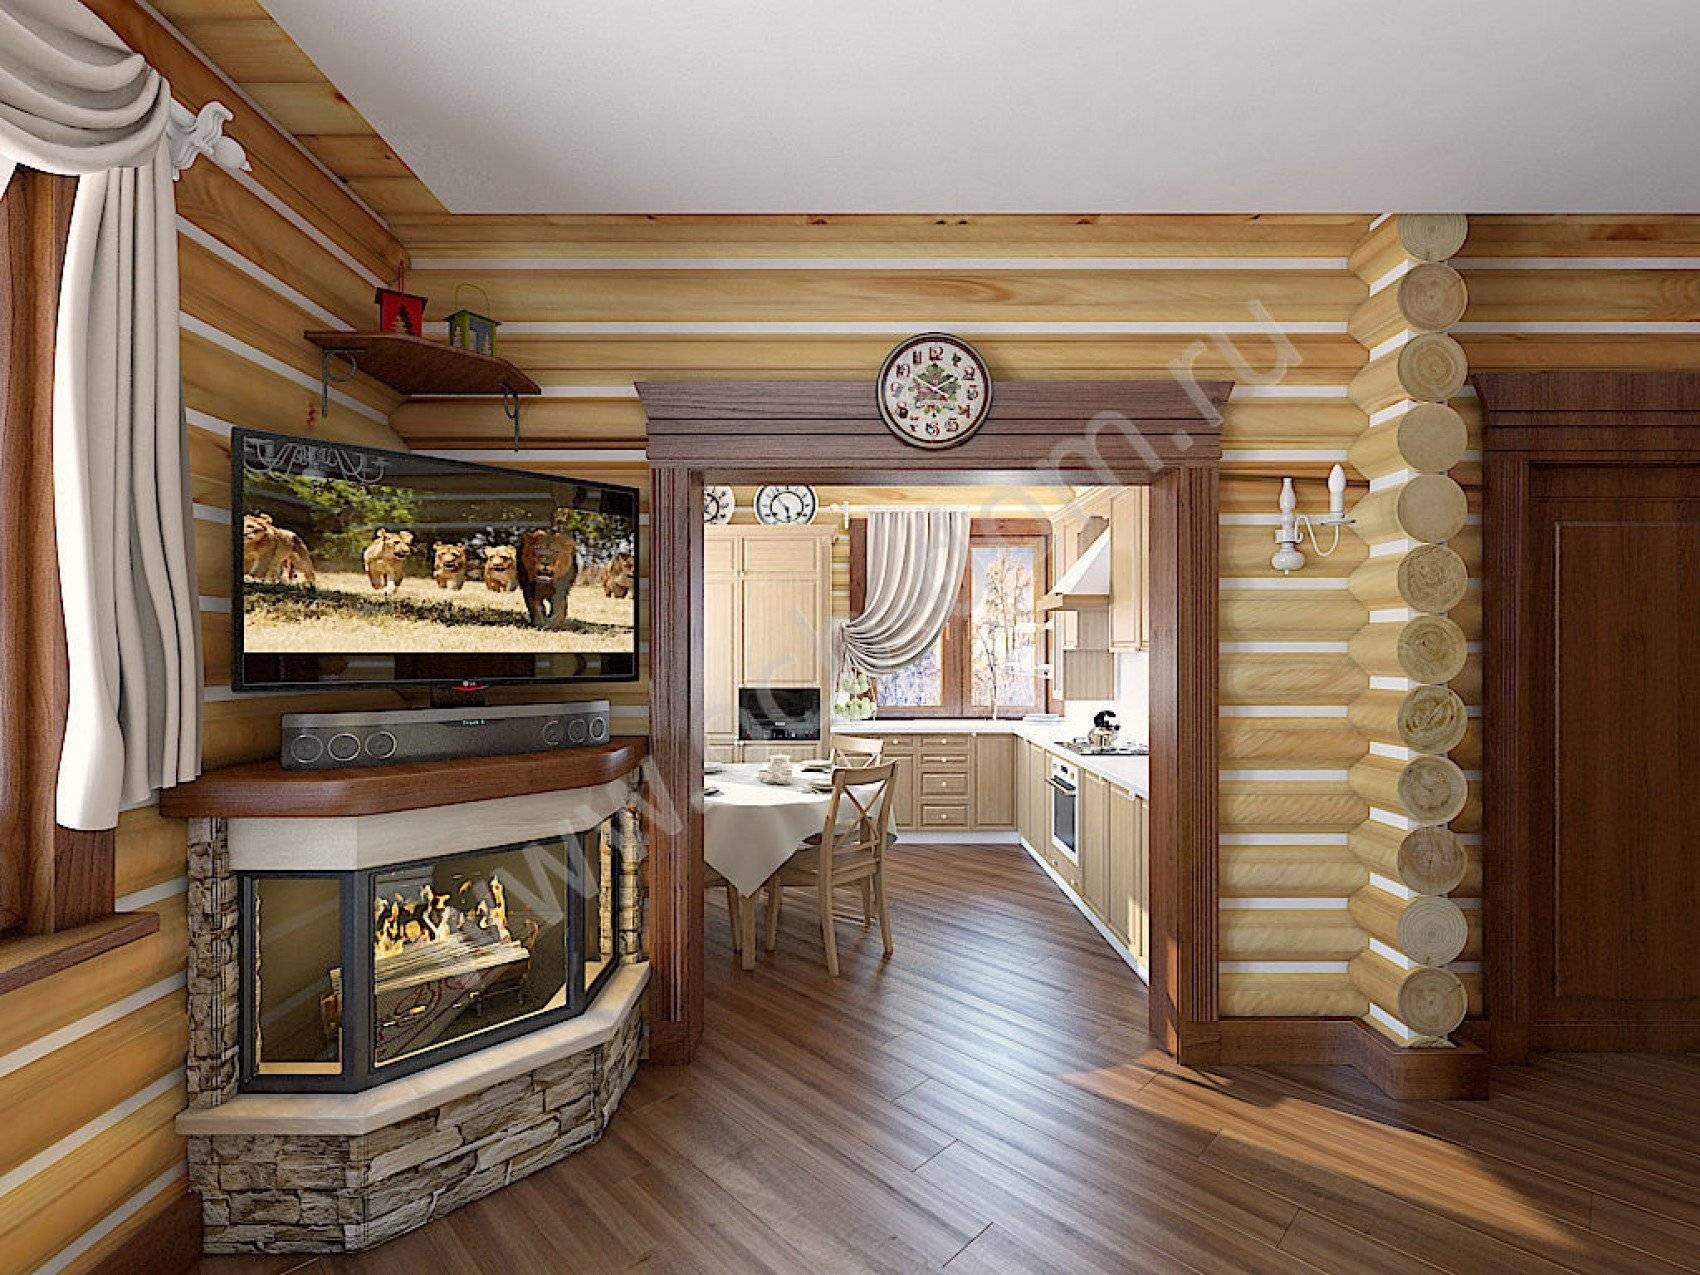 Интерьер деревянного дома внутри - фото домов из бруса и бревна, стили